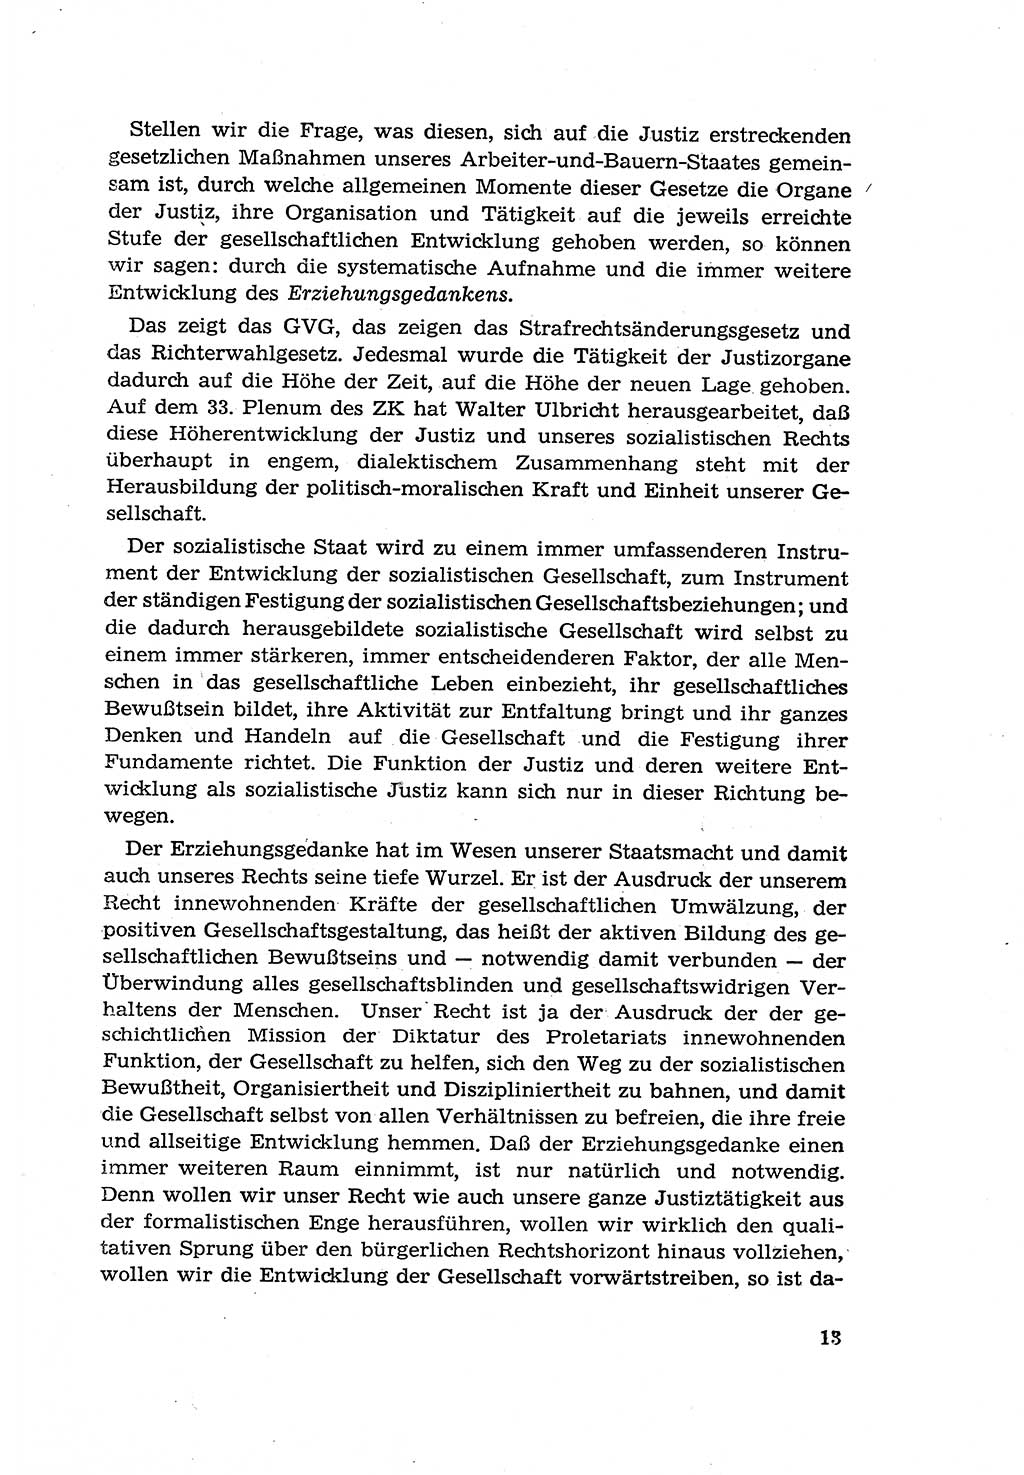 Zur Entwicklung des sozialistischen Strafrechts der Deutschen Demokratischen Republik (DDR) 1960, Seite 13 (Entw. soz. Strafr. DDR 1960, S. 13)